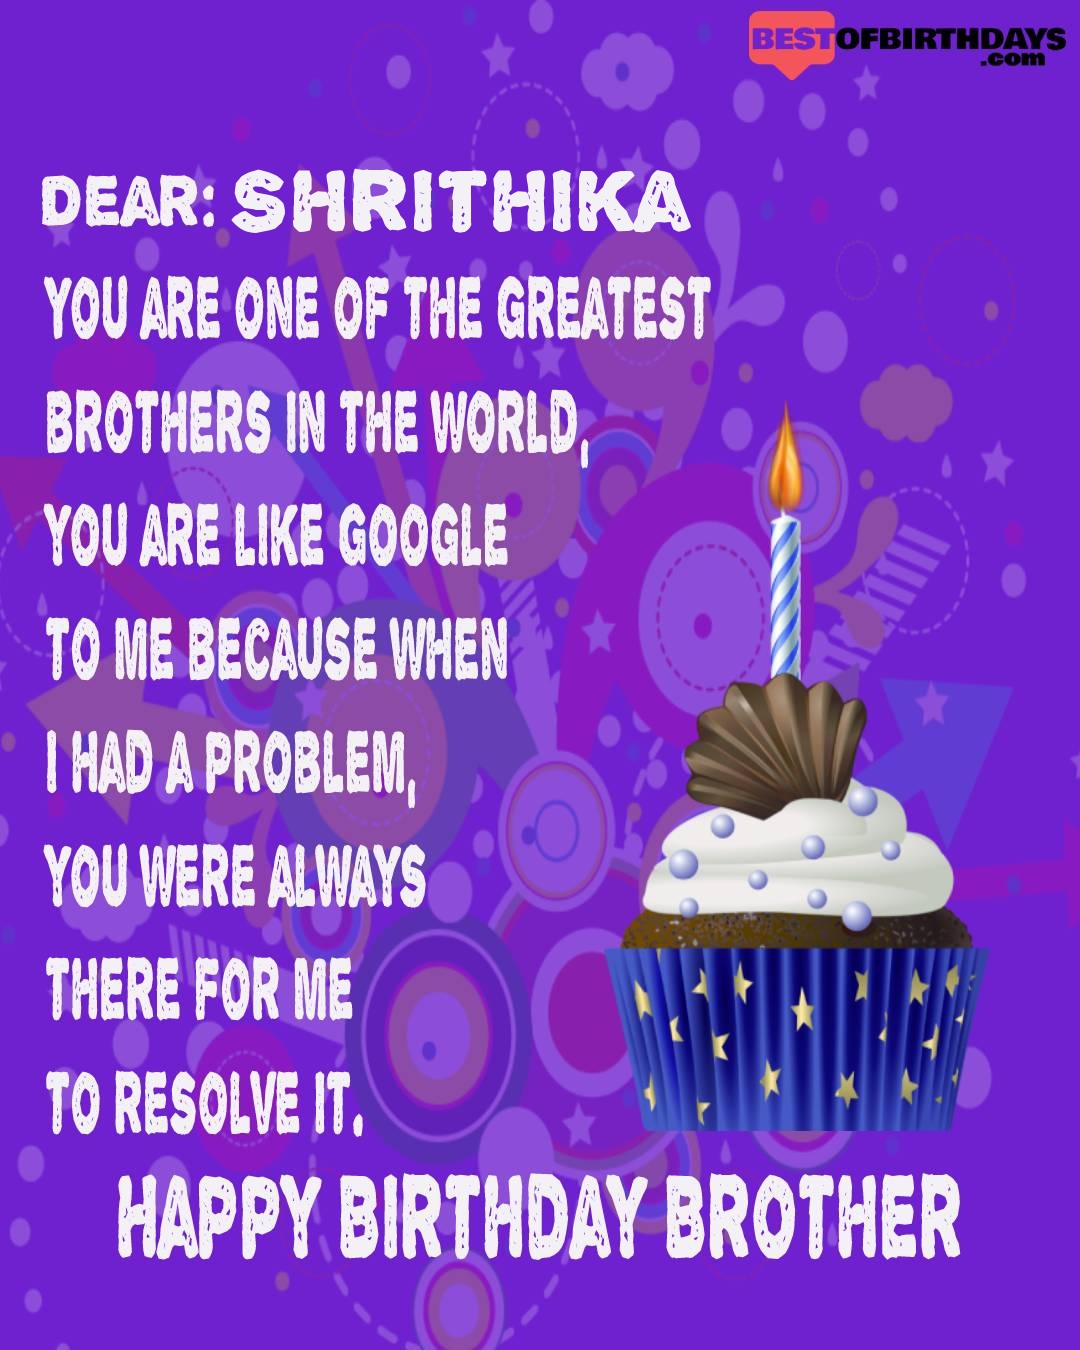 Happy birthday shrithika bhai brother bro